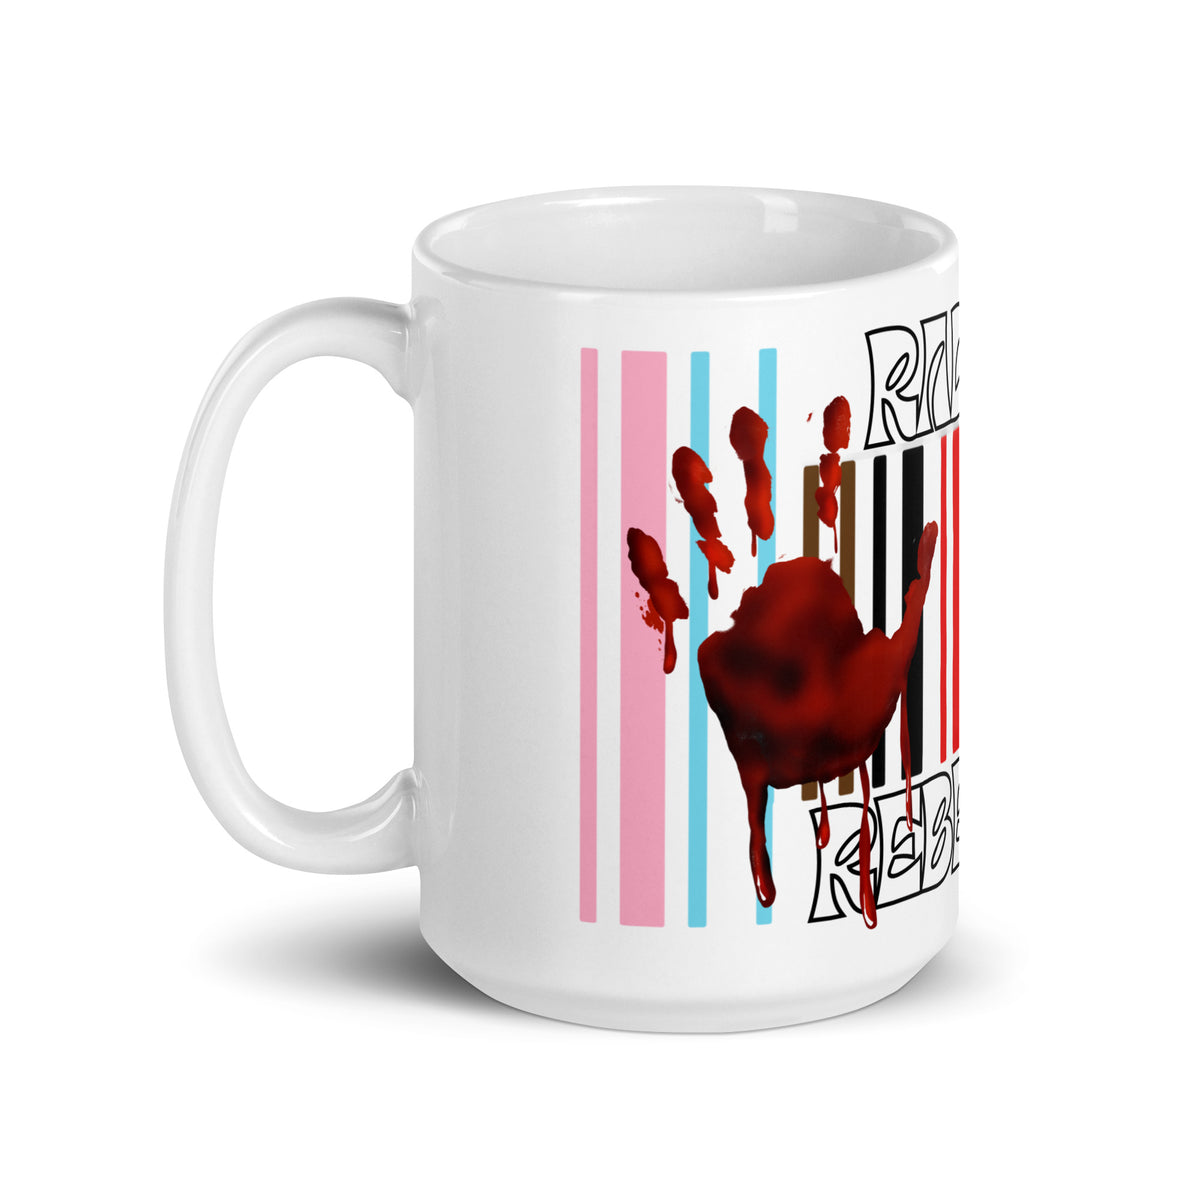 Radical Rainbow Rebellion Mug - mug - Twisted Jezebel